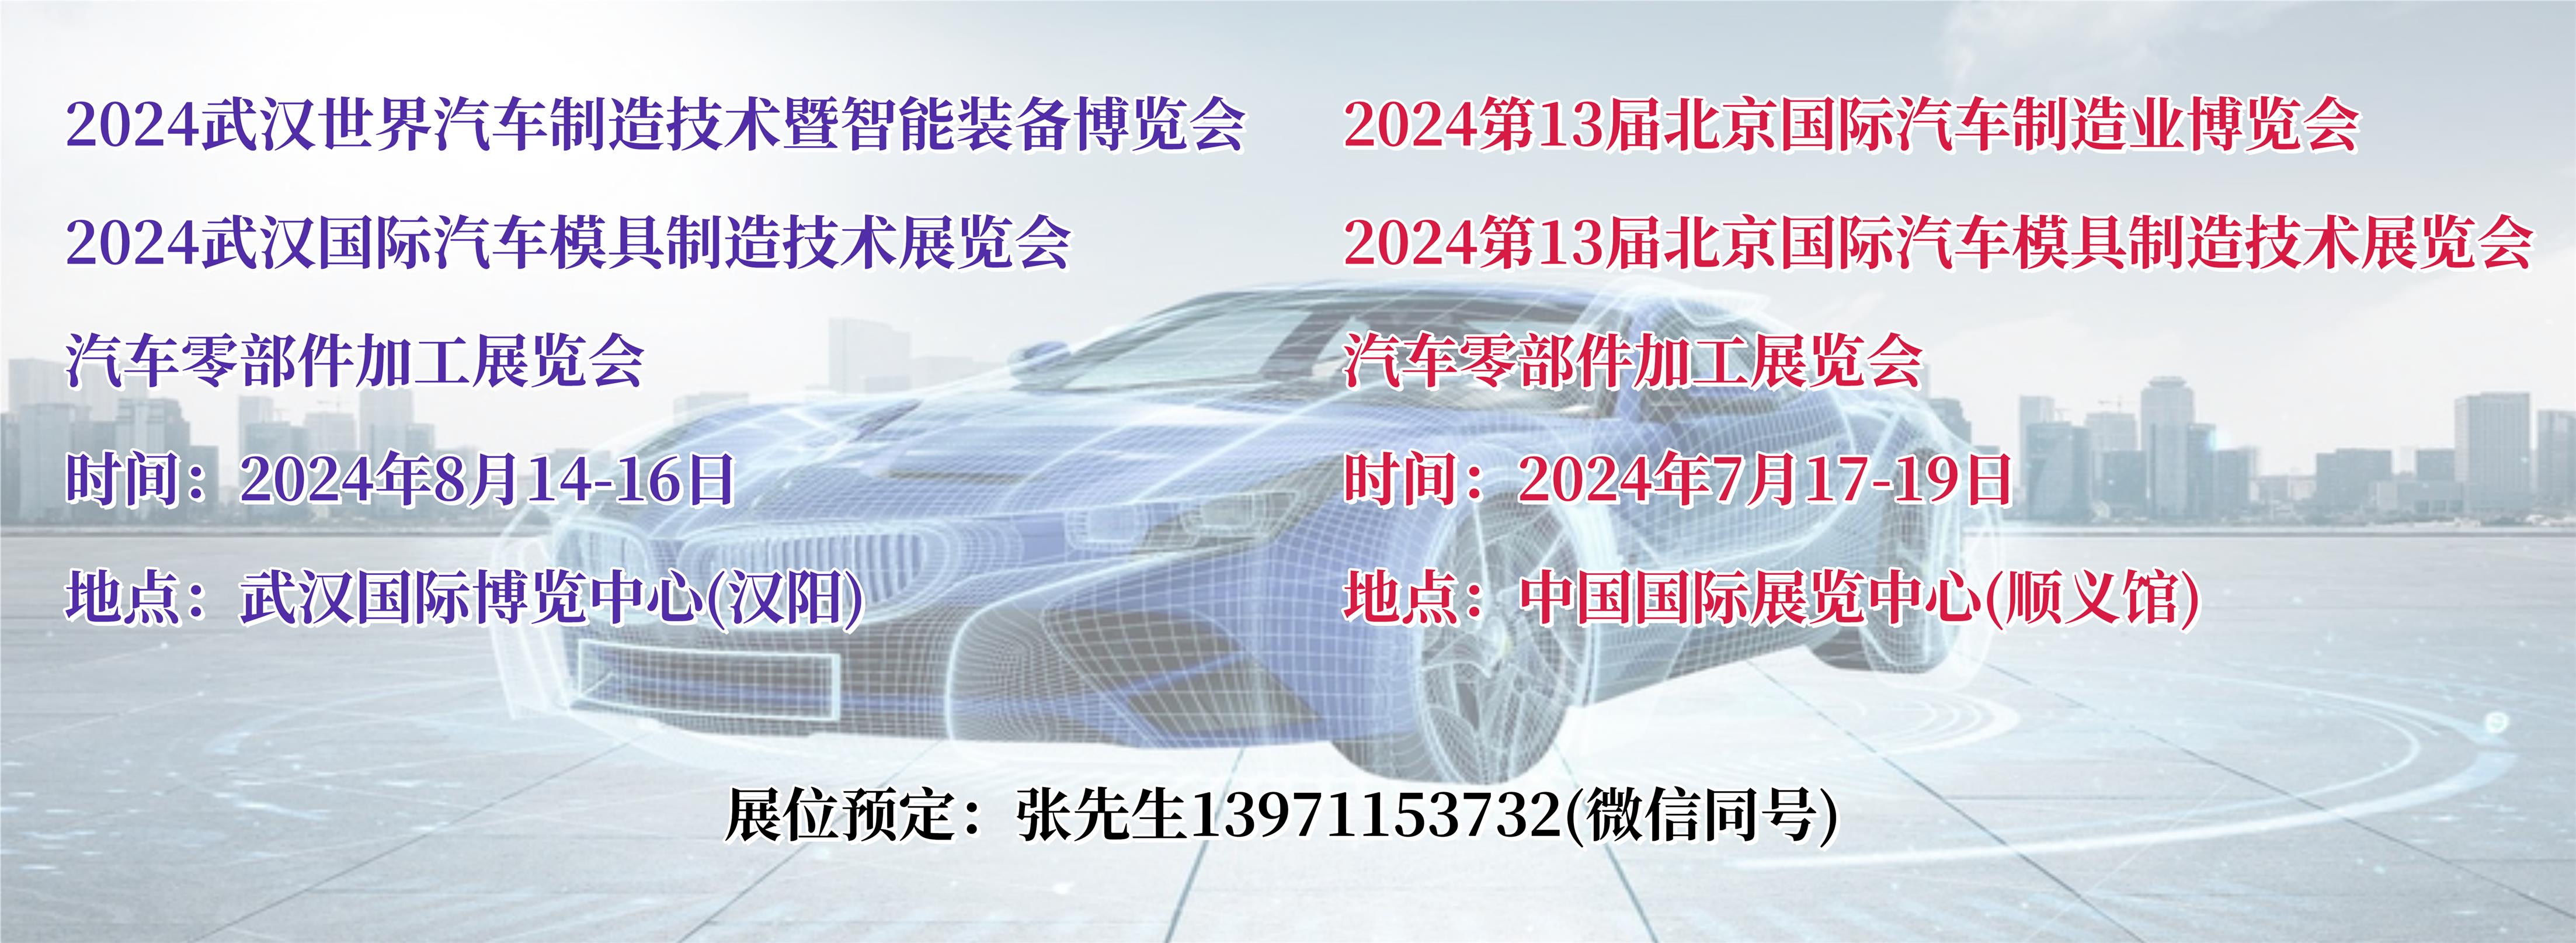 2024武汉北京汽车模具及零部件展图片.jpg